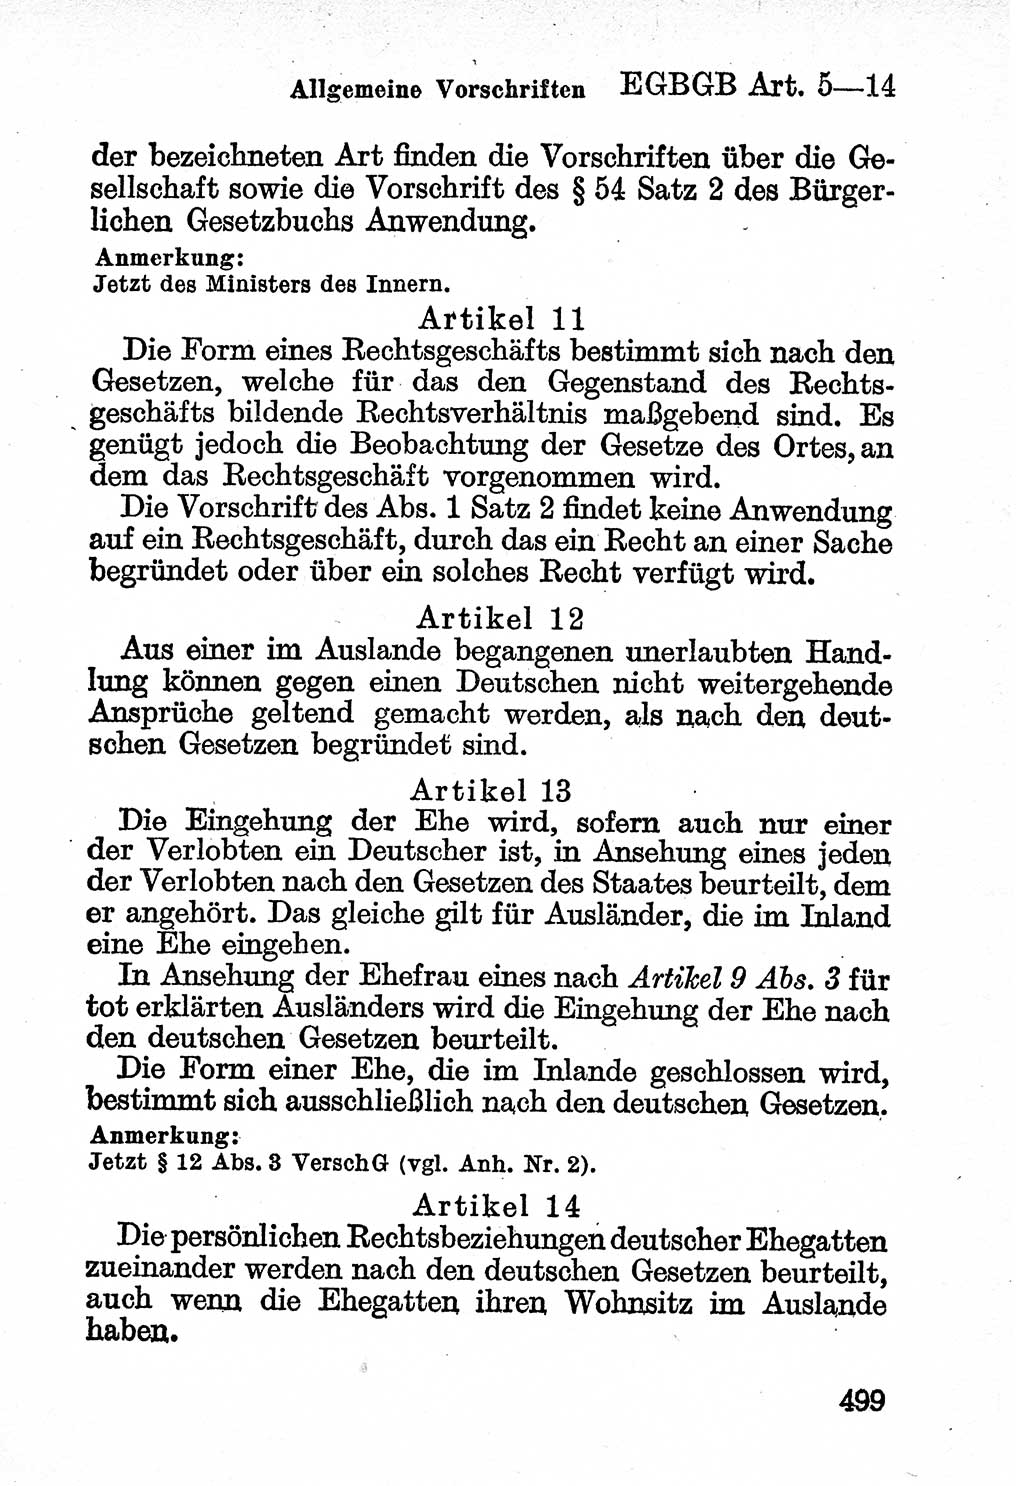 Bürgerliches Gesetzbuch (BGB) nebst wichtigen Nebengesetzen [Deutsche Demokratische Republik (DDR)] 1956, Seite 499 (BGB Nebenges. DDR 1956, S. 499)